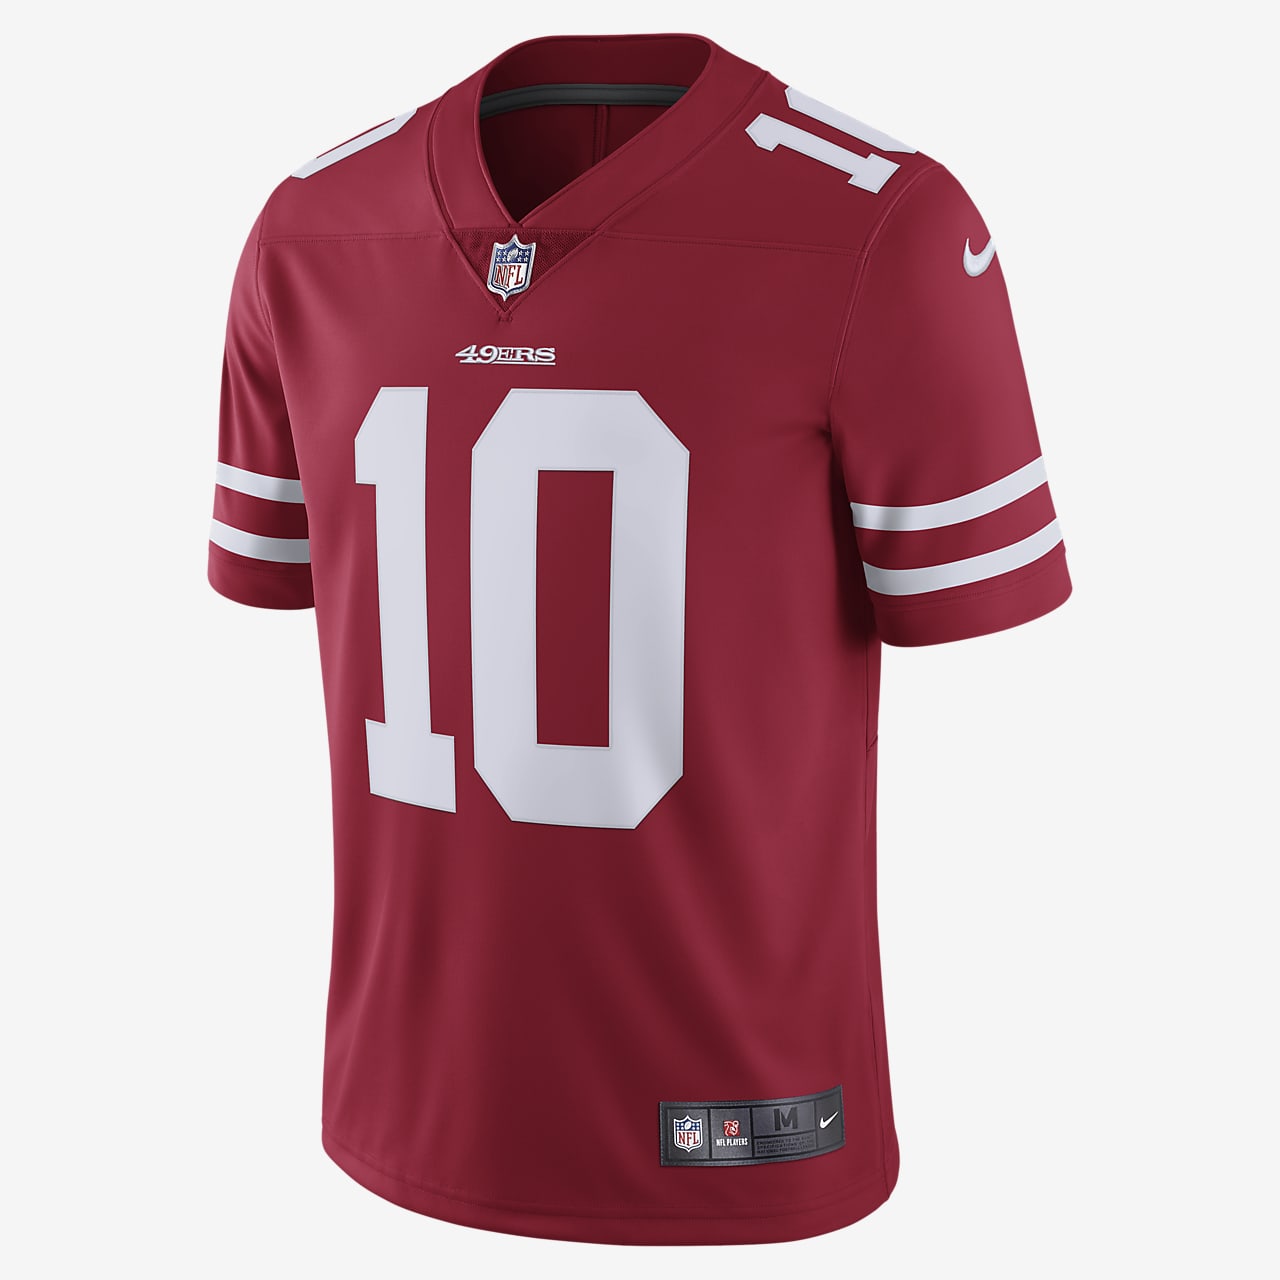 Camiseta de fútbol americano para Limited de la NFL San Francisco 49ers.